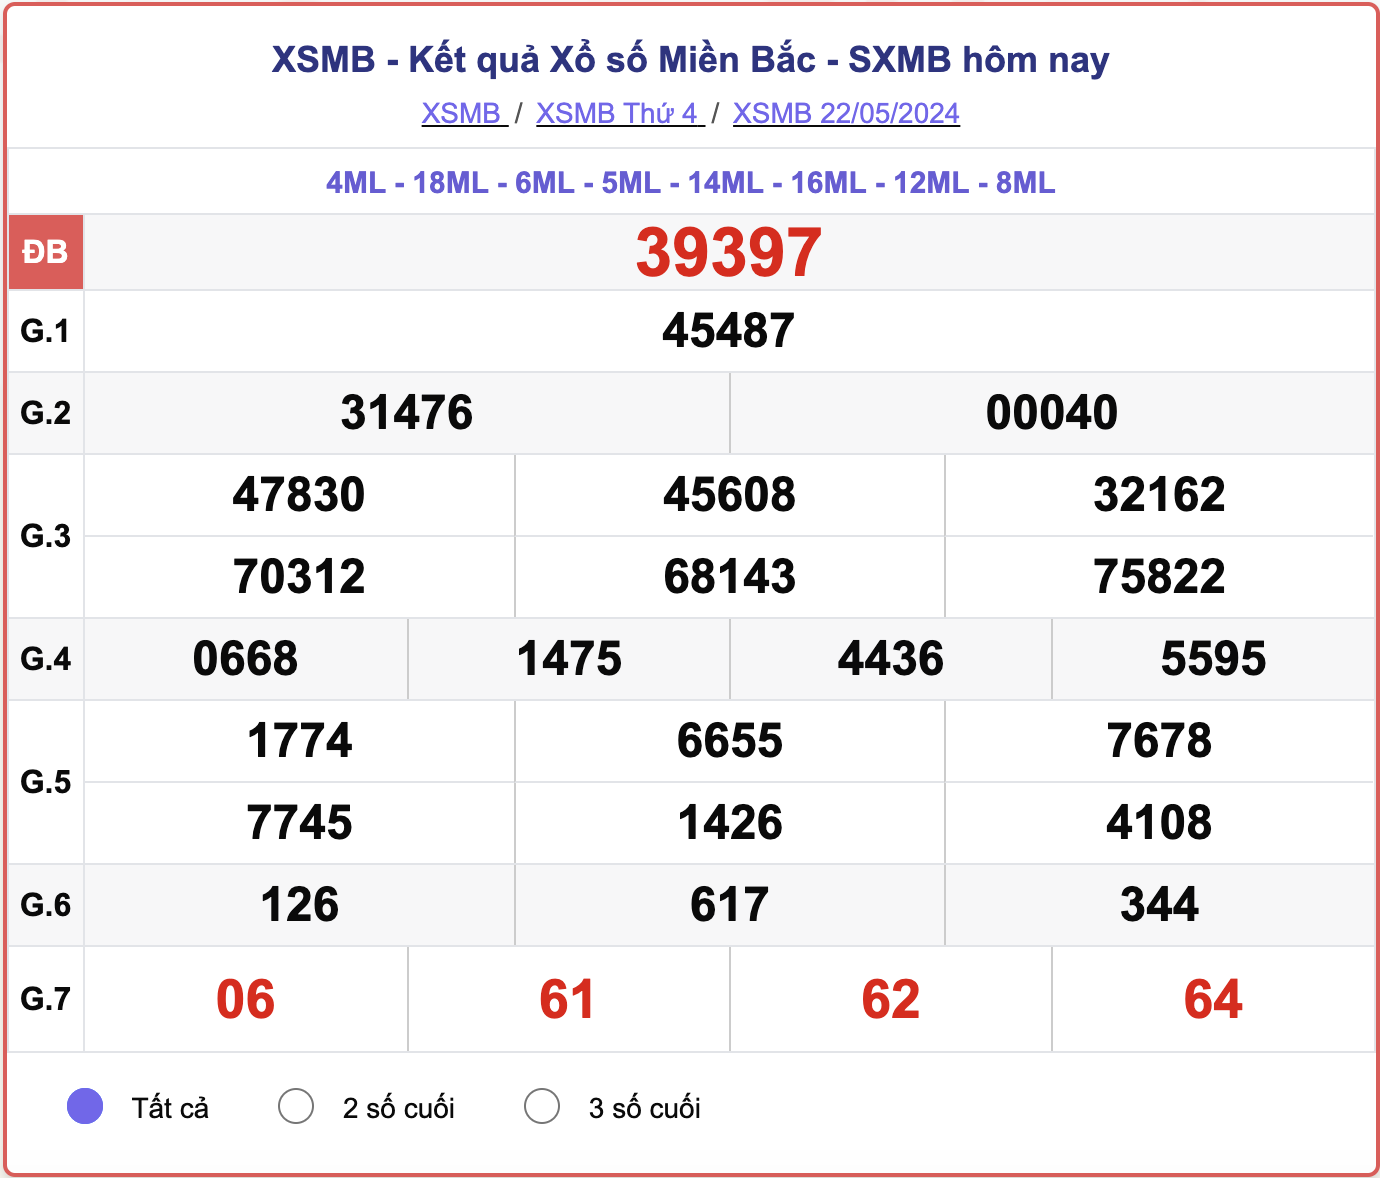 XSMB 28/5 - Kết quả xổ số miền Bắc hôm nay 28/5/2024 - KQXSMB ngày 28/5- Ảnh 7.